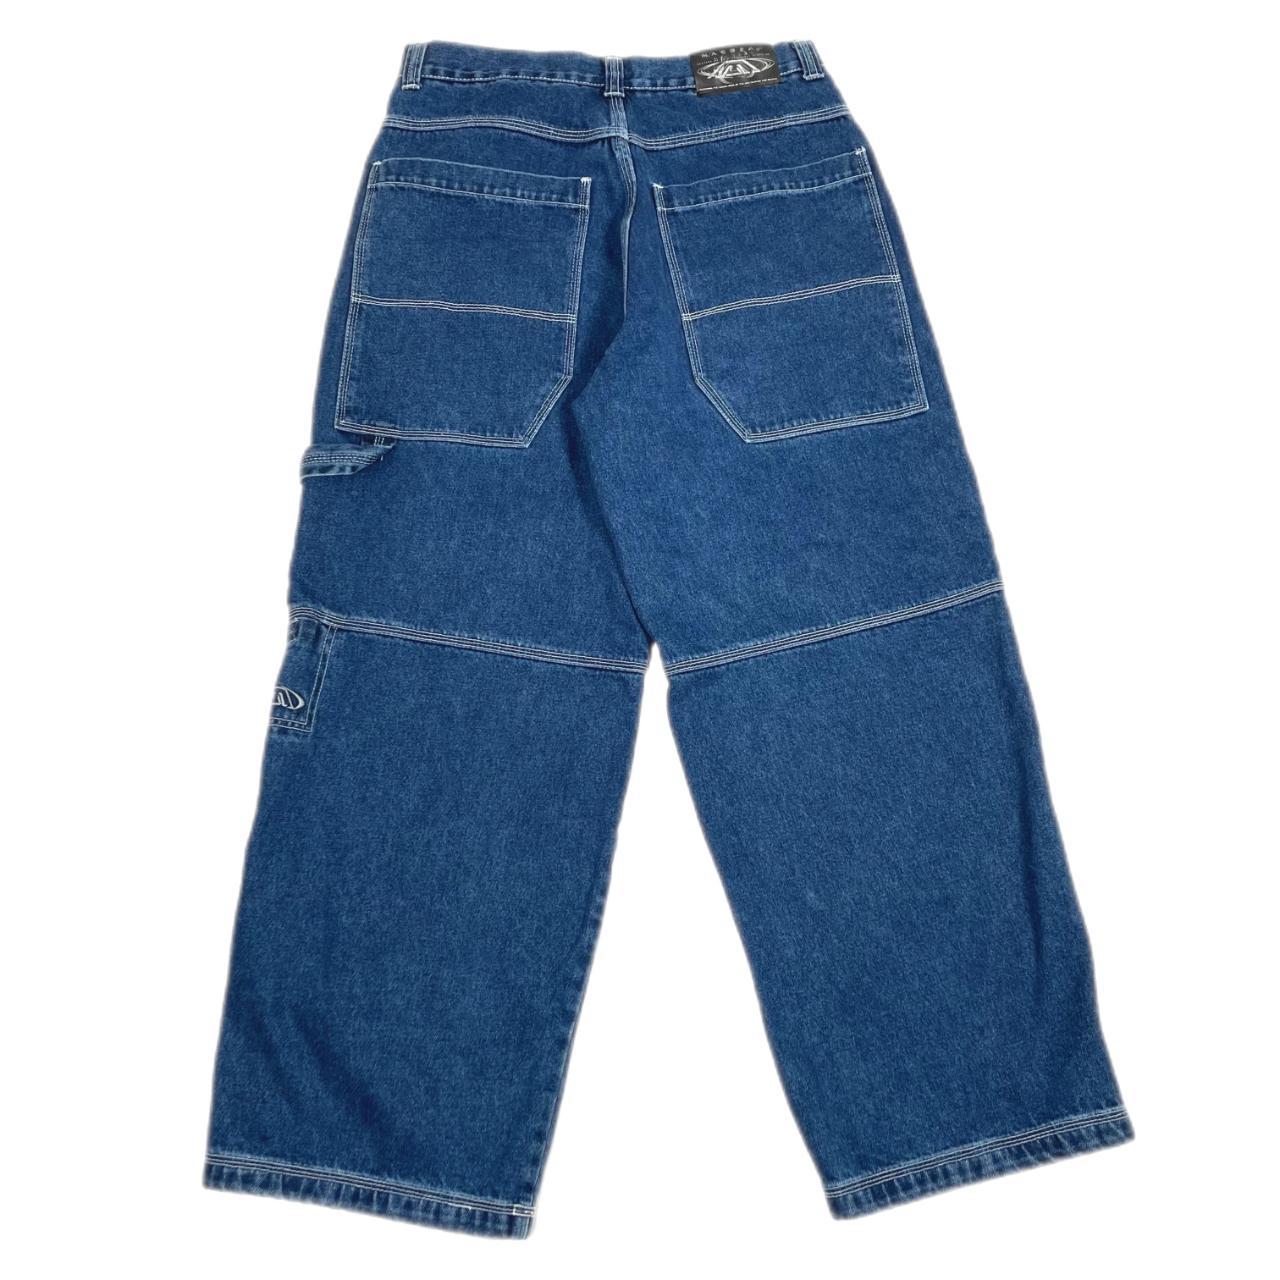 Vintage MacGear baggy carpenter jeans • Size... - Depop